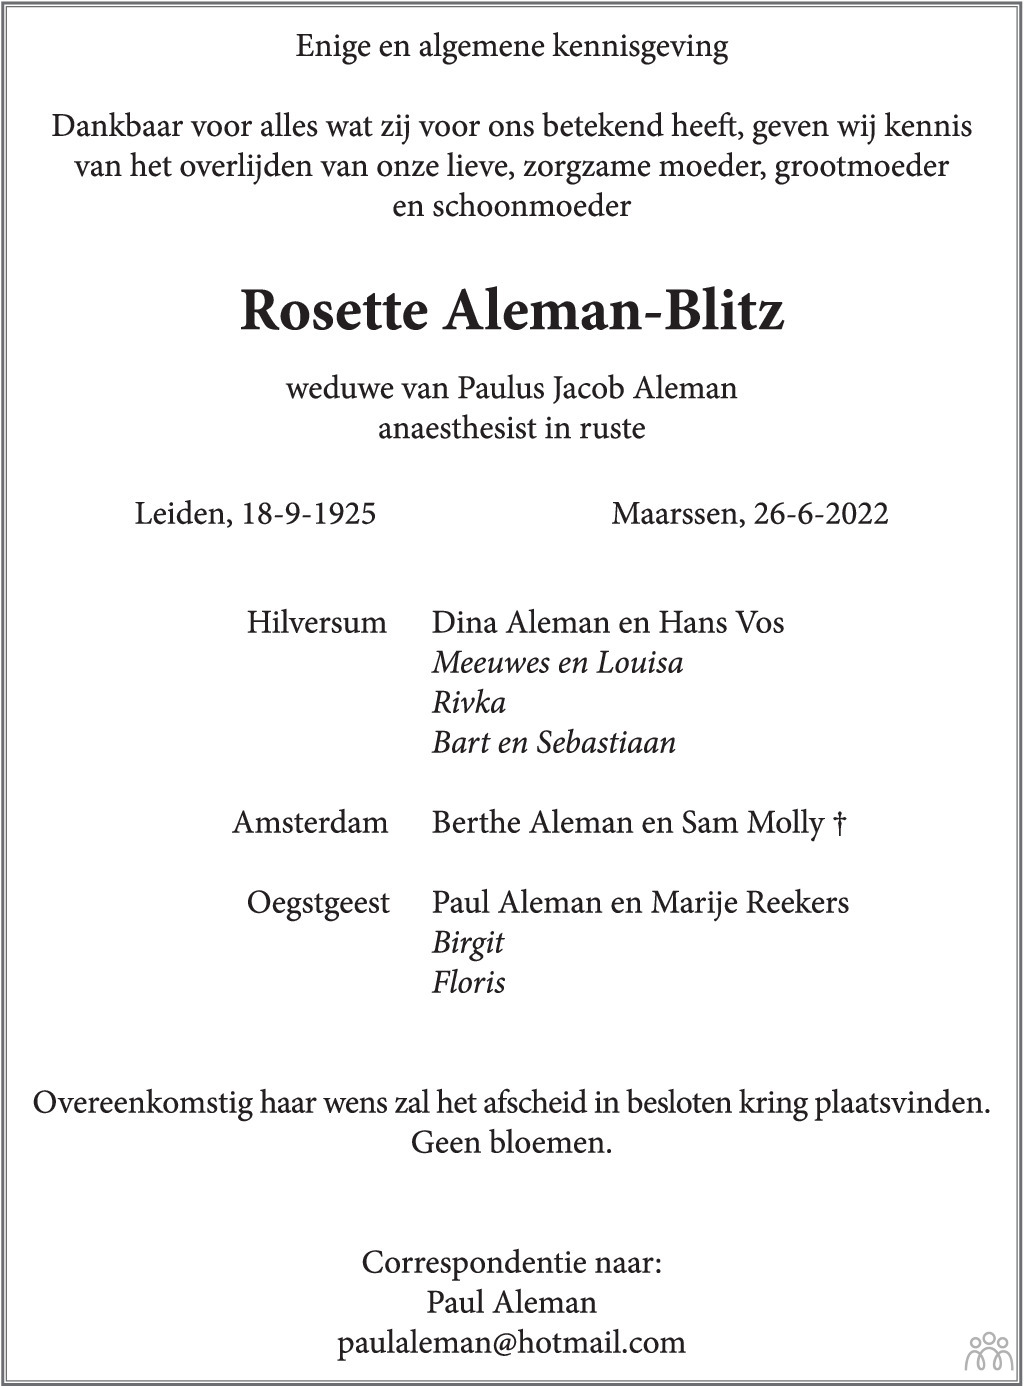 Overlijdensbericht van Rosette Aleman-Blitz in Eindhovens Dagblad